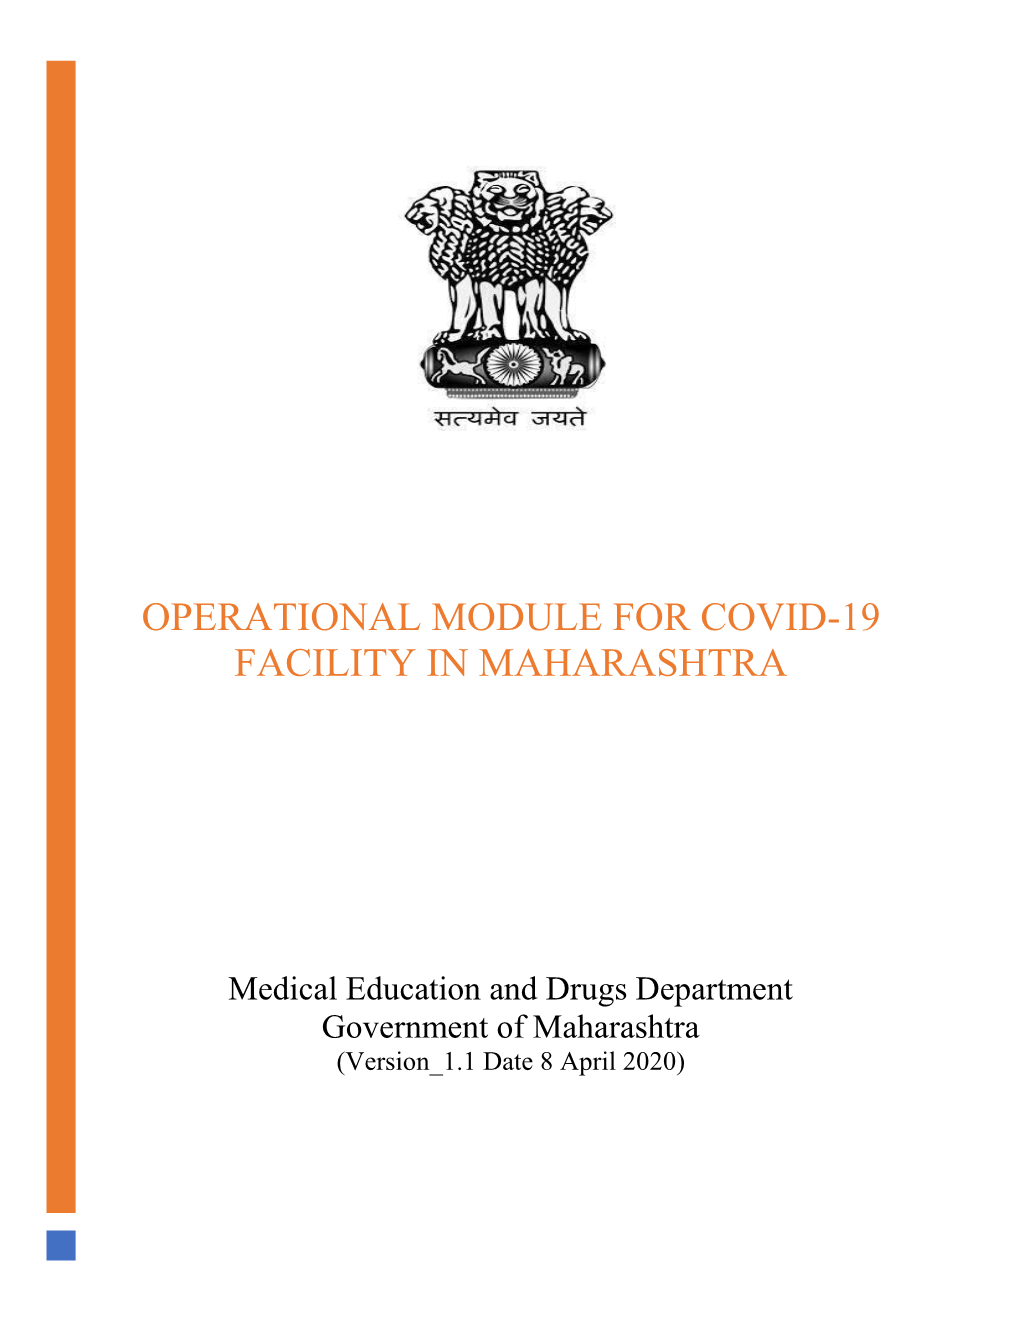 Operational Module for Covid-19 Facility in Maharashtra